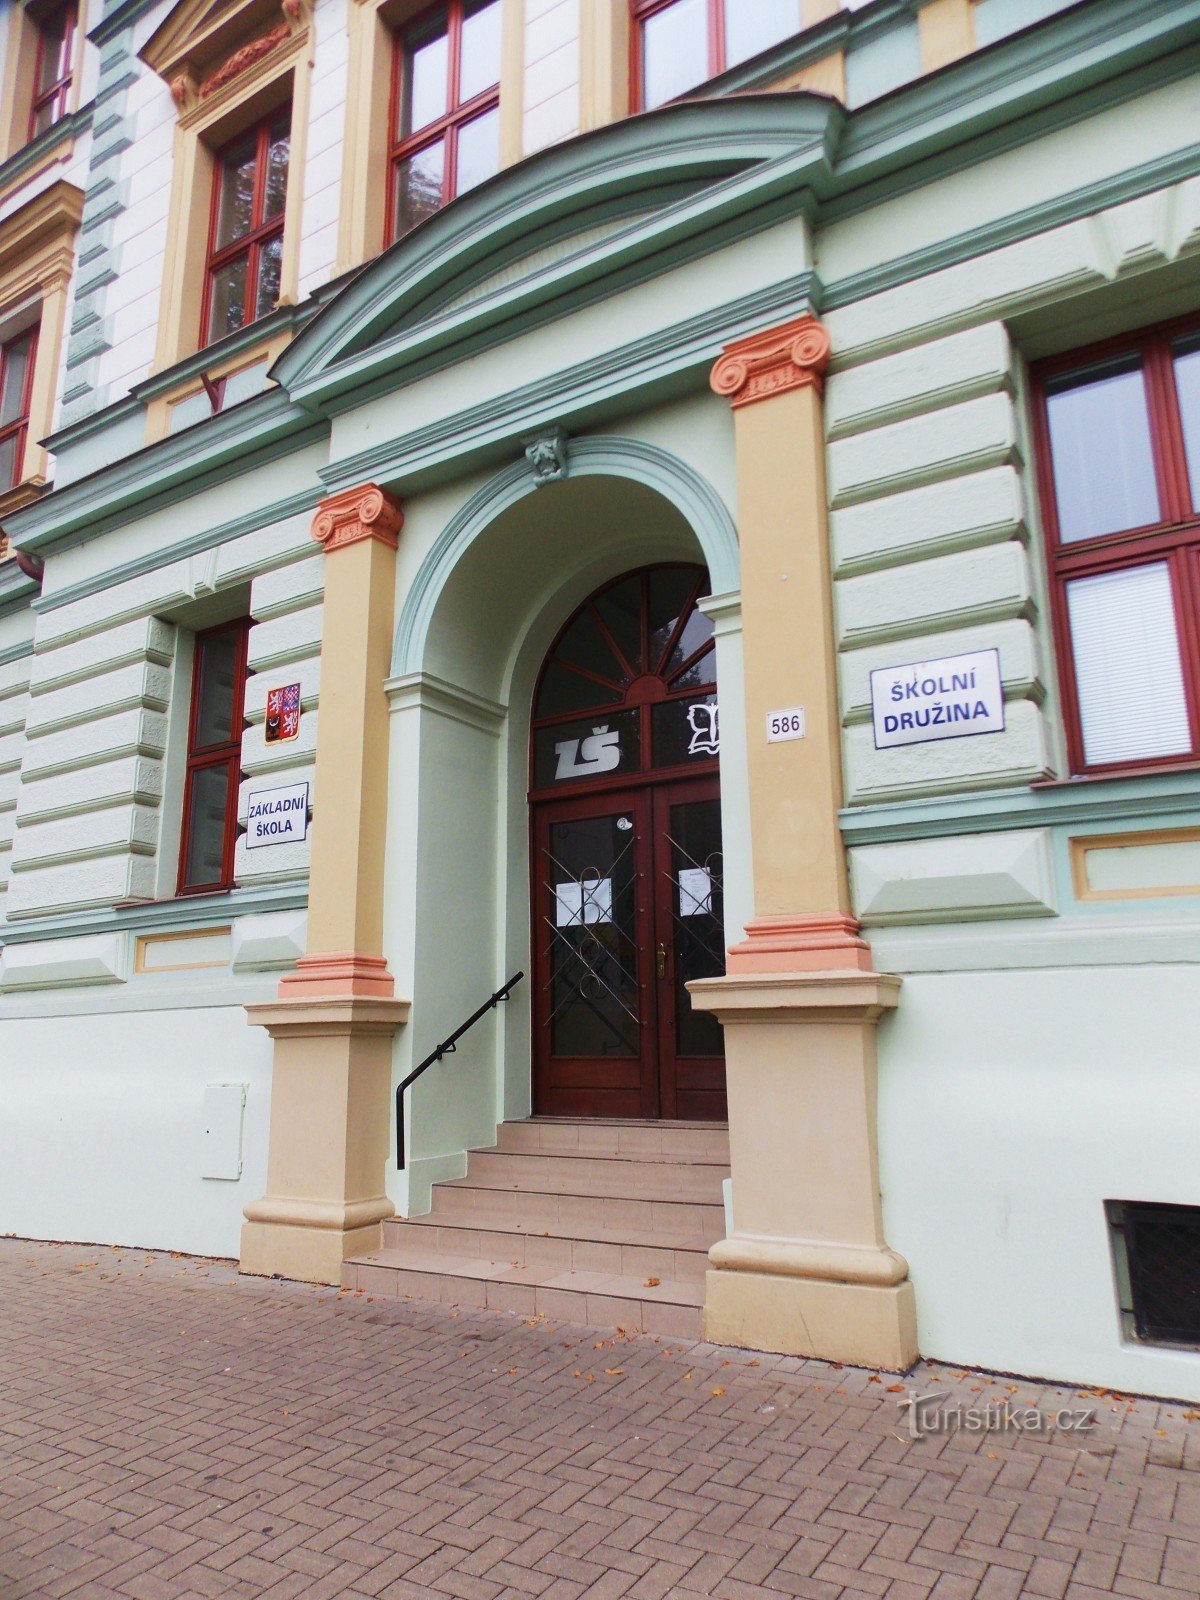 Cea mai veche școală primară St. Boemia în Kojetín